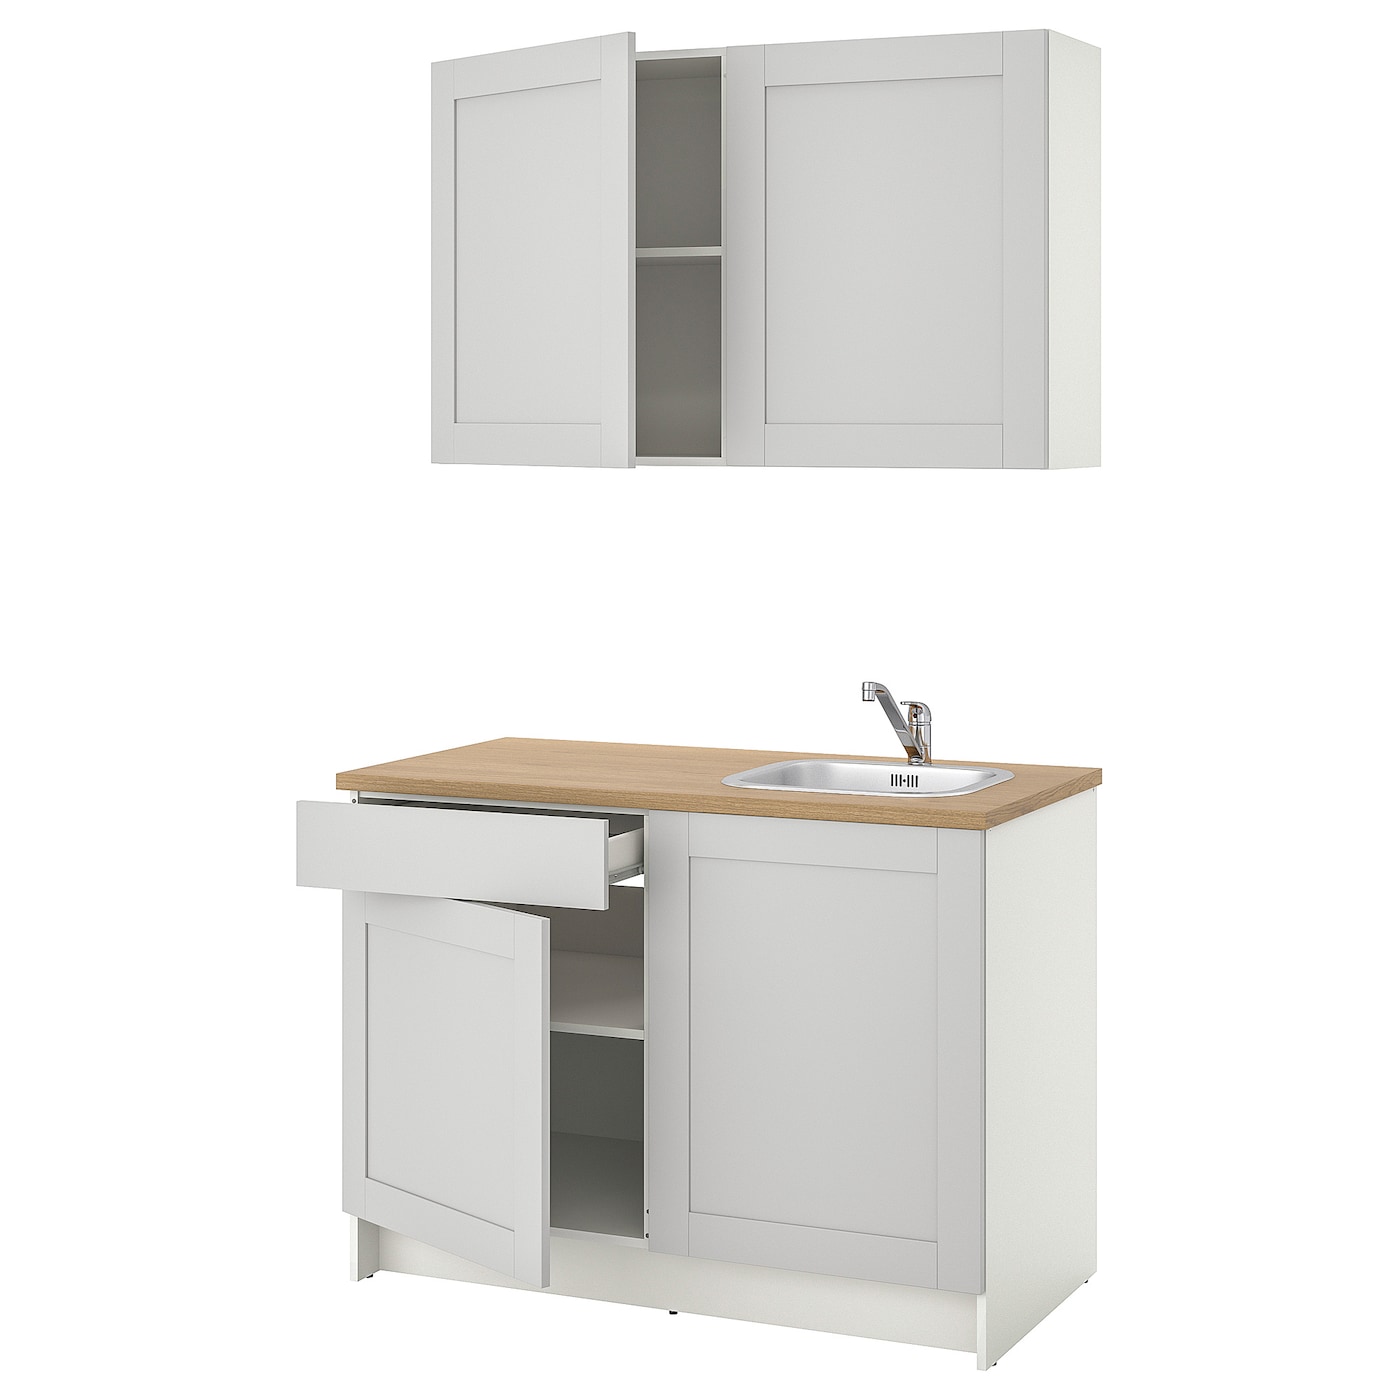 Кухонная комбинация для хранения вещей - KNOXHULT IKEA/ КНОКСХУЛЬТ ИКЕА, 120x61x220 см, серый/бежевый